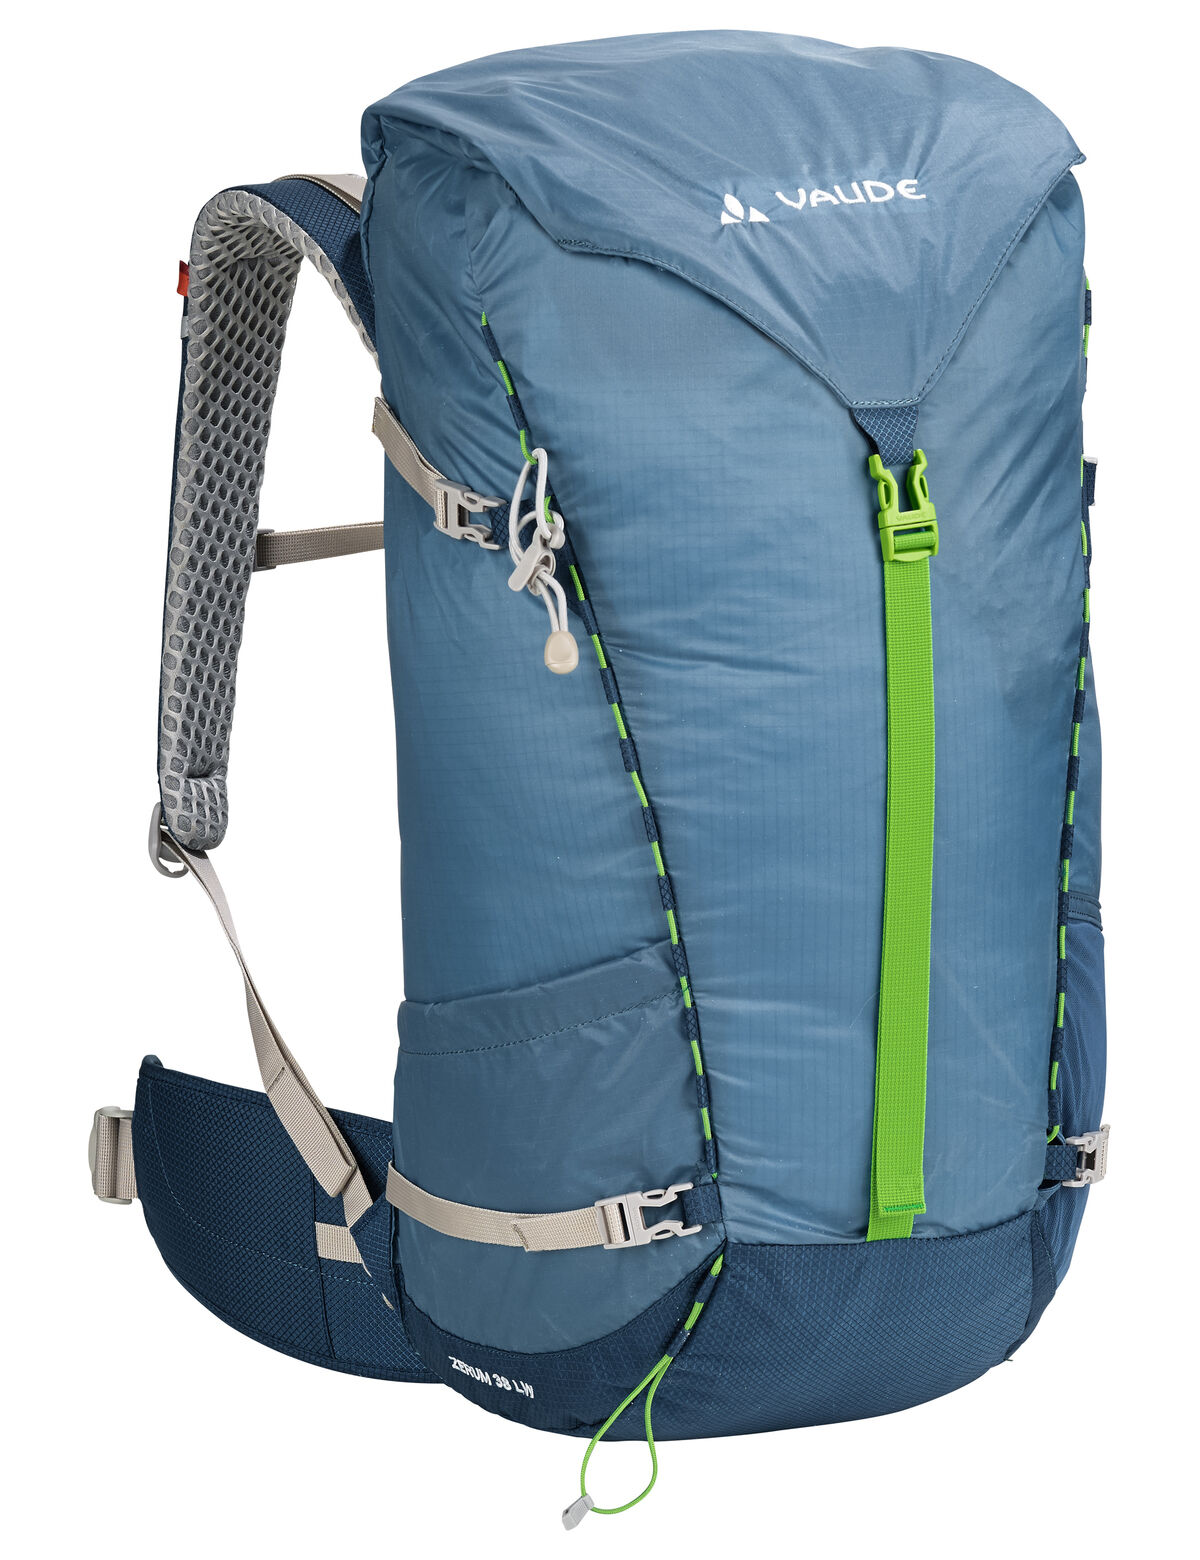 Vaude - Zerum 38 LW - Hiking backpack